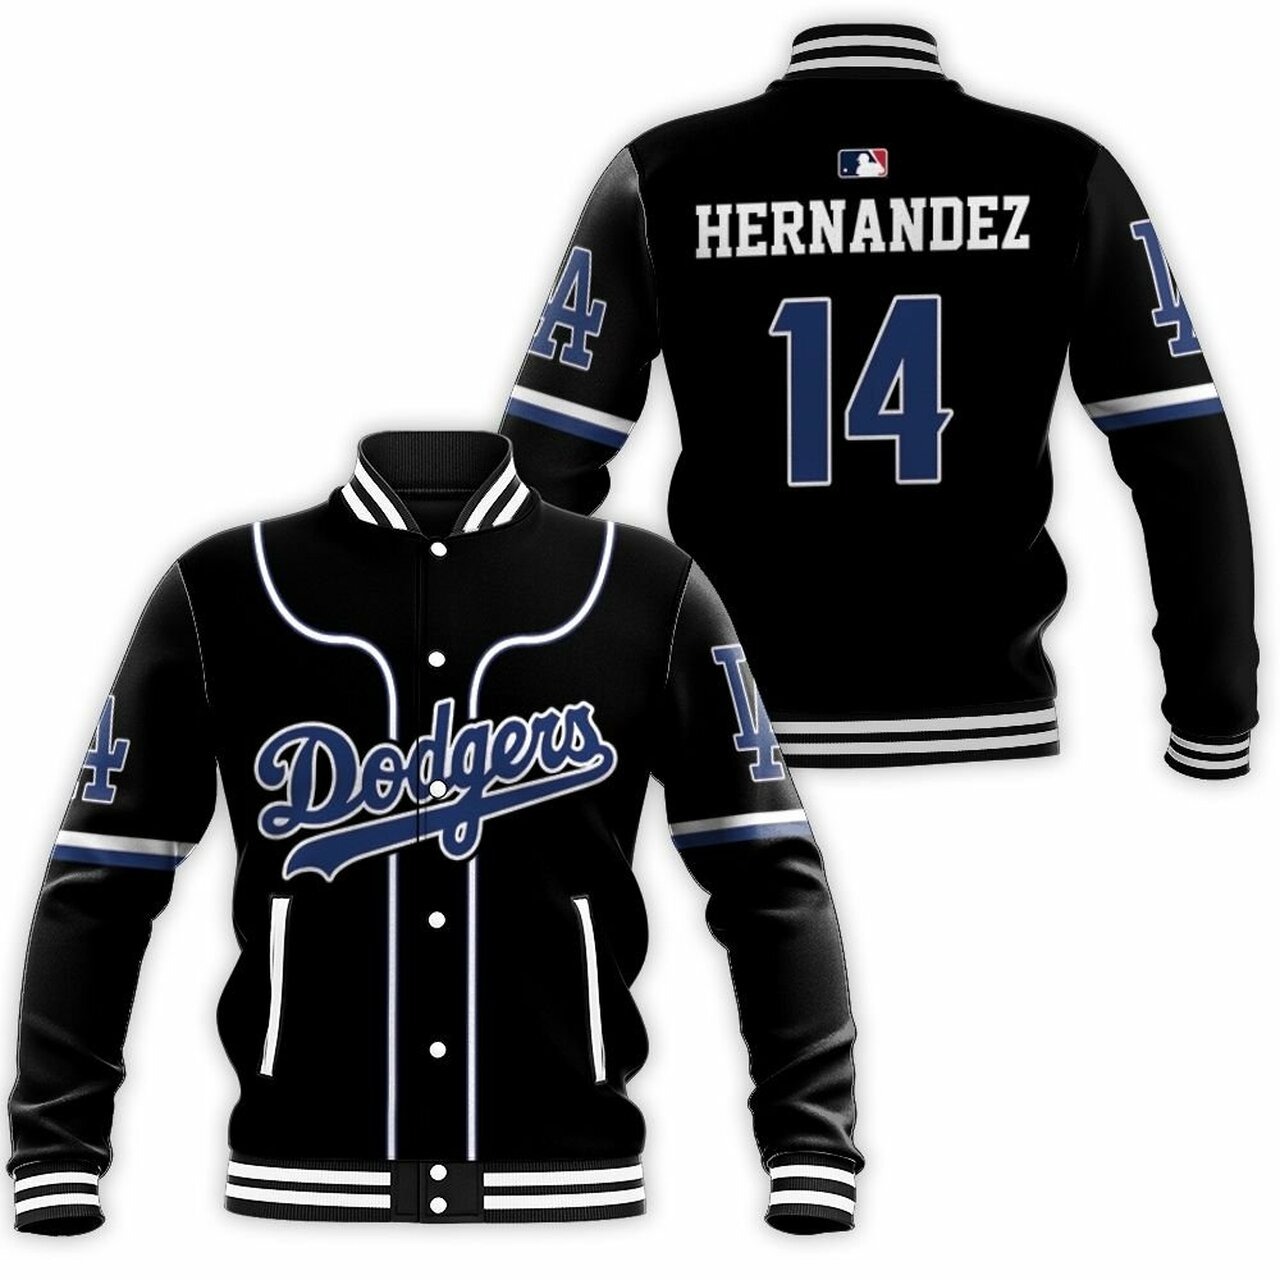 Los Angeles Dodgers Enrique Hernandez 14 Mlb 2020 Black Baseball Jacket